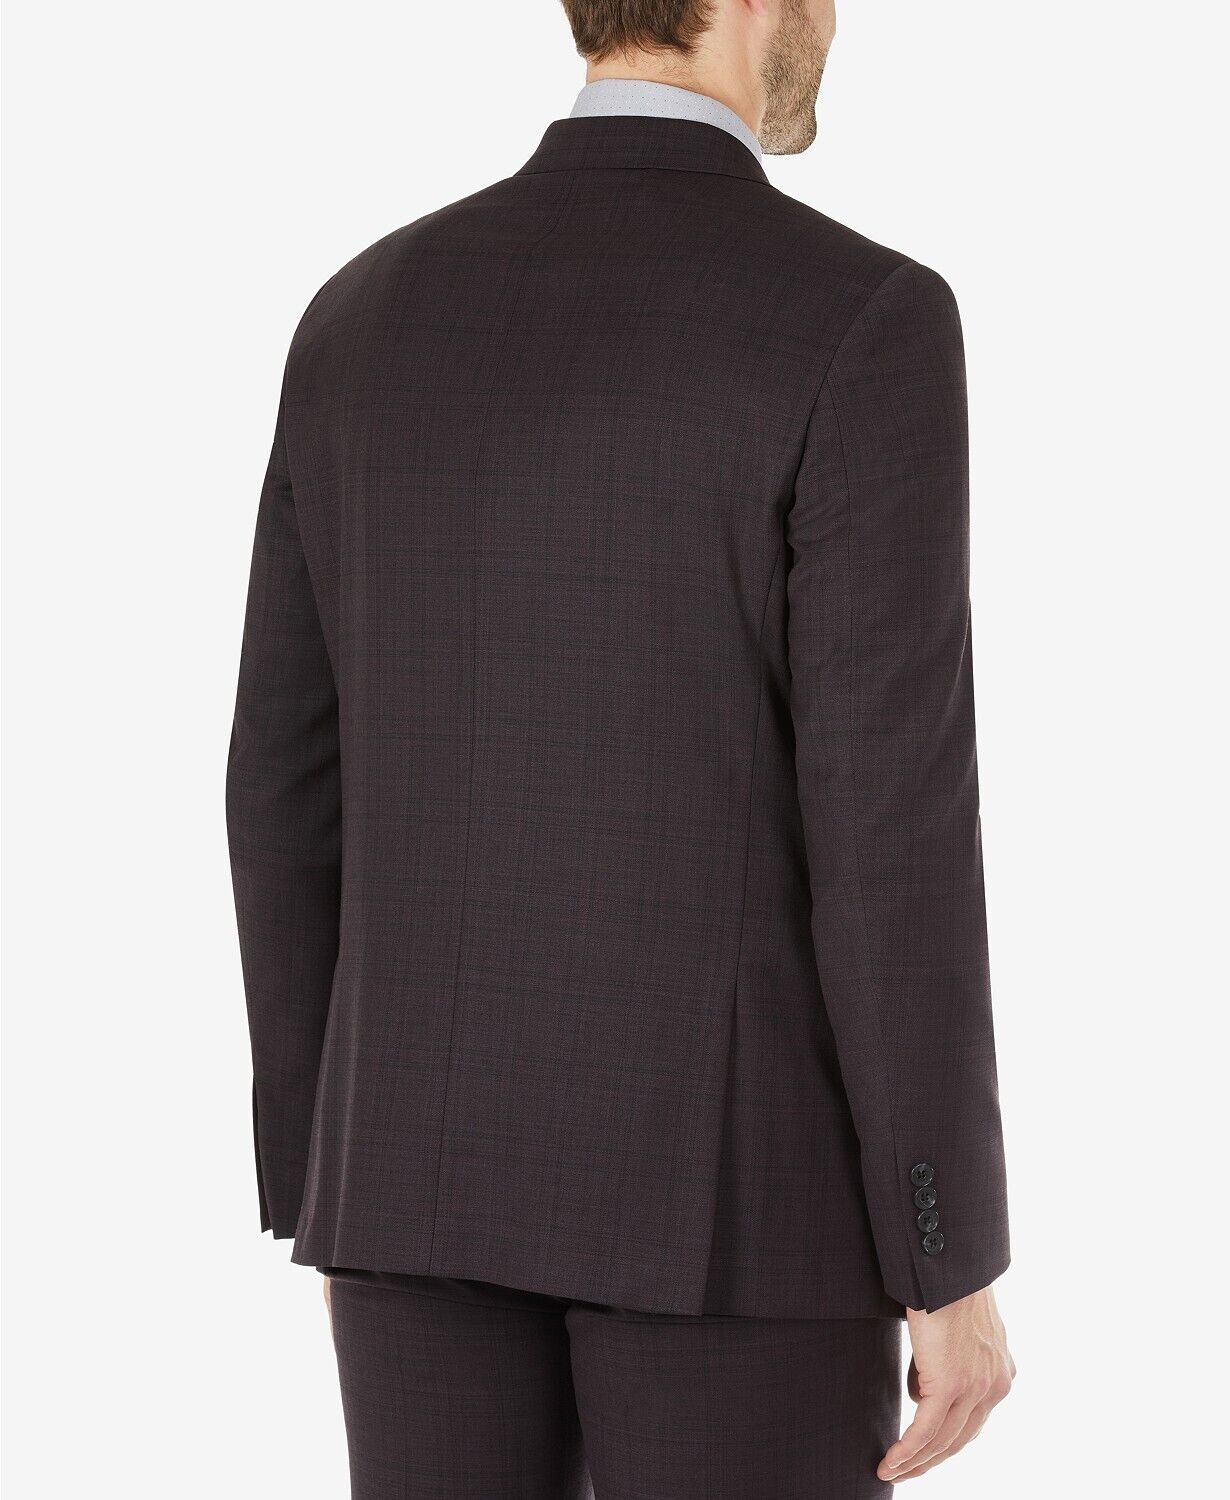 Calvin Klein Men's Skinny Fit Wool Suit Jacket Burgundy 40L Eggplant Plaid